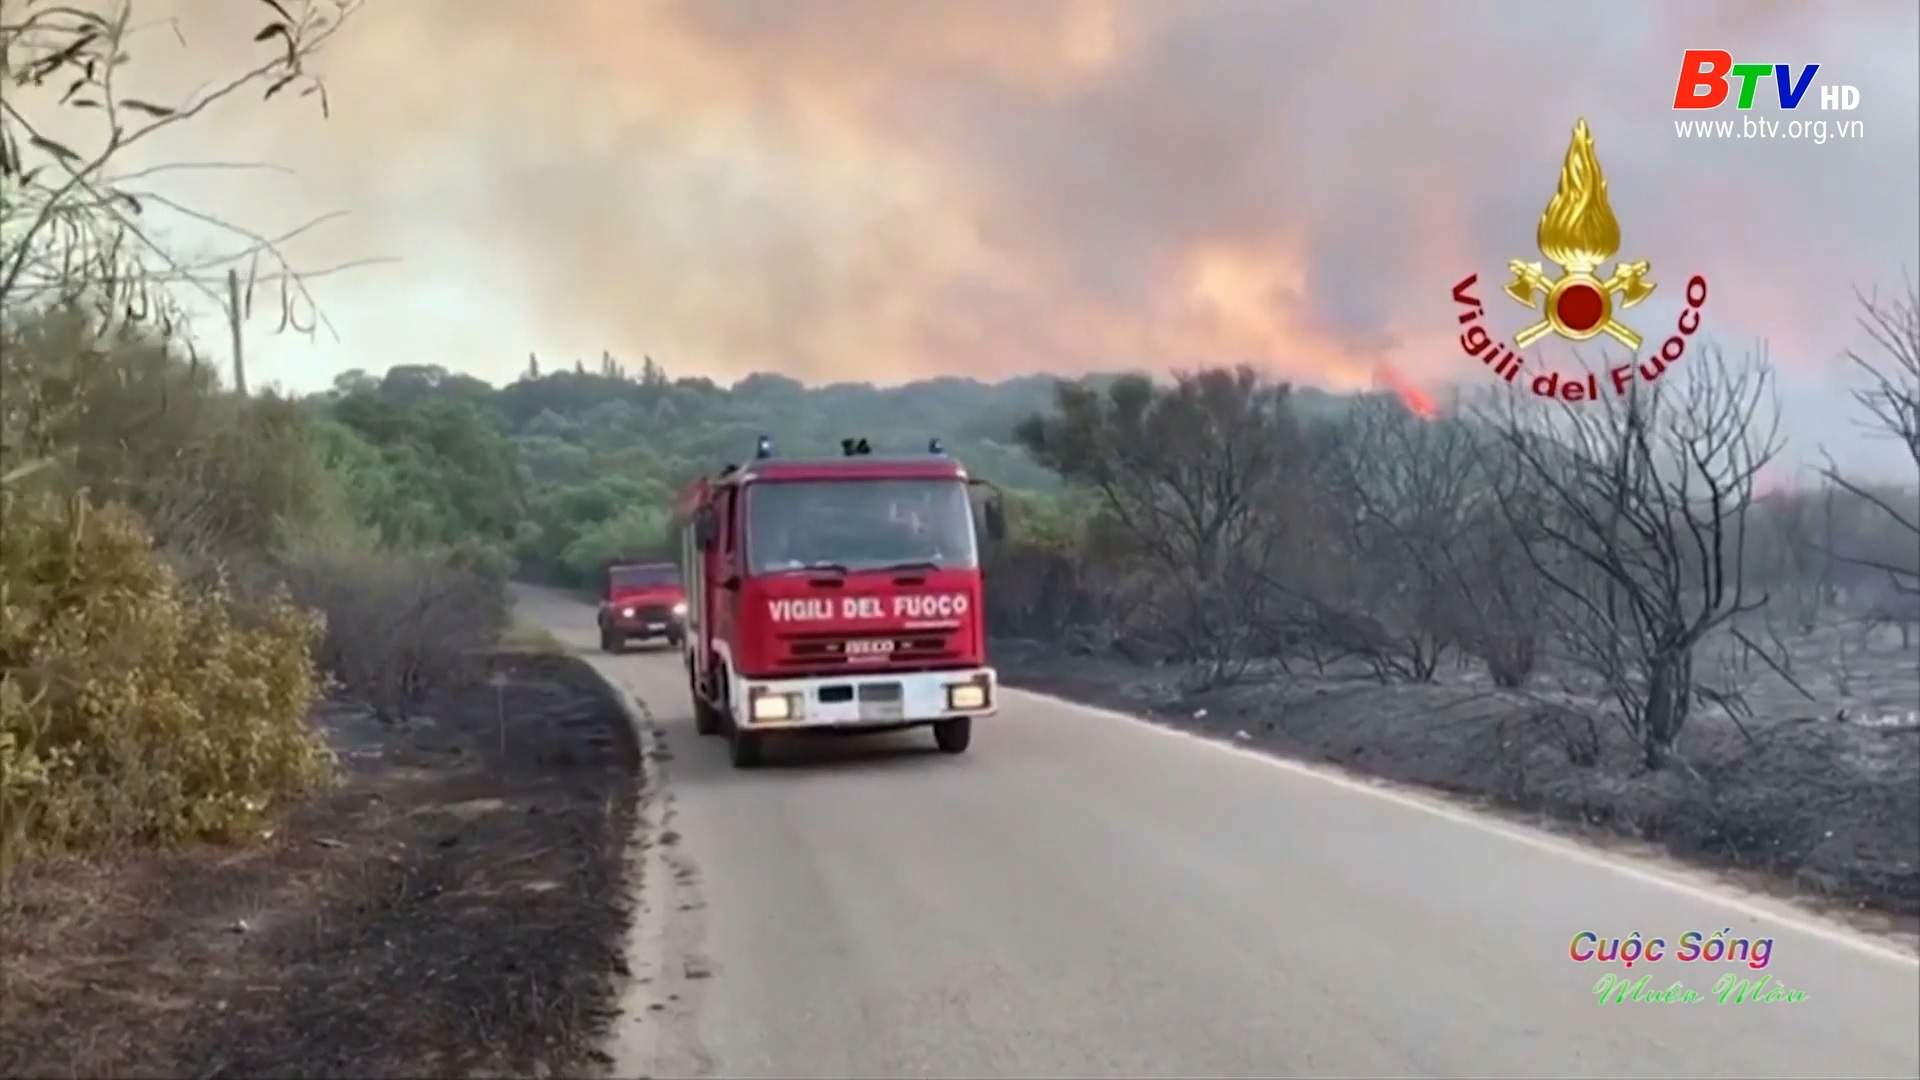 Đảo Sardinia phòng chống cháy rừng bằng công nghệ cao